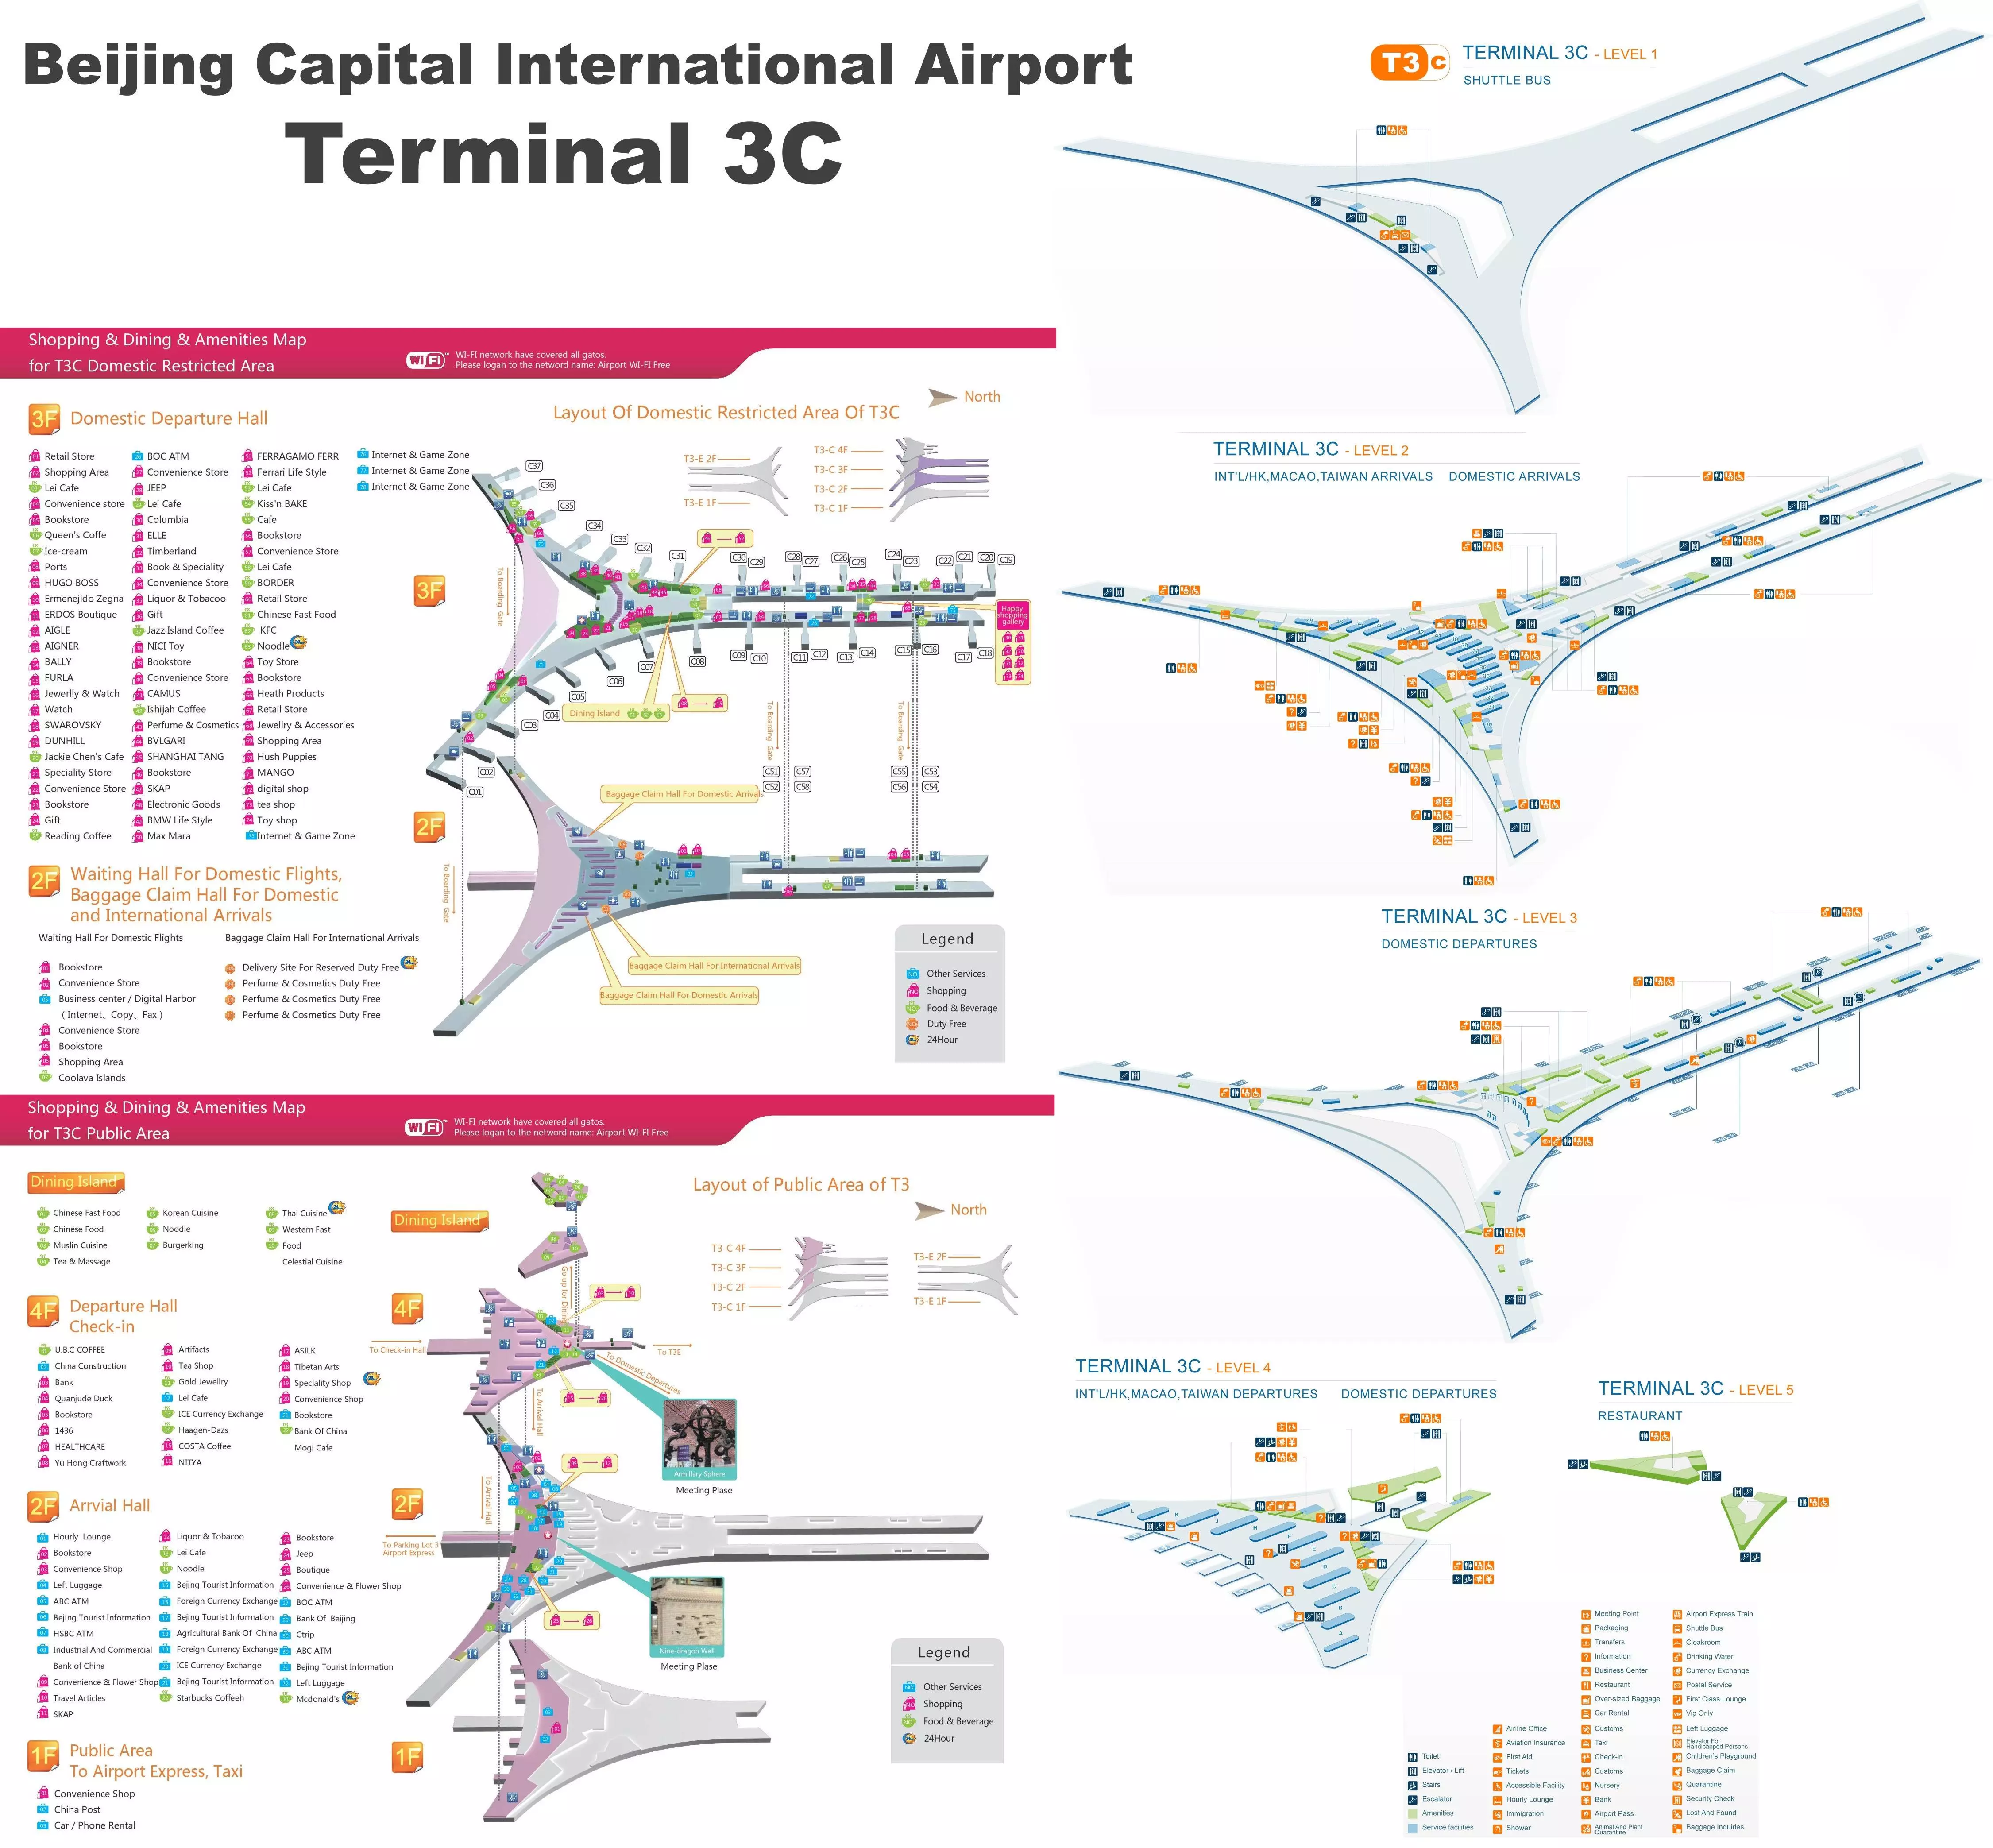 Аэропорт пекина шоуду интернэшнл (beijing capital international airport) ✈ в городе пекин в китай